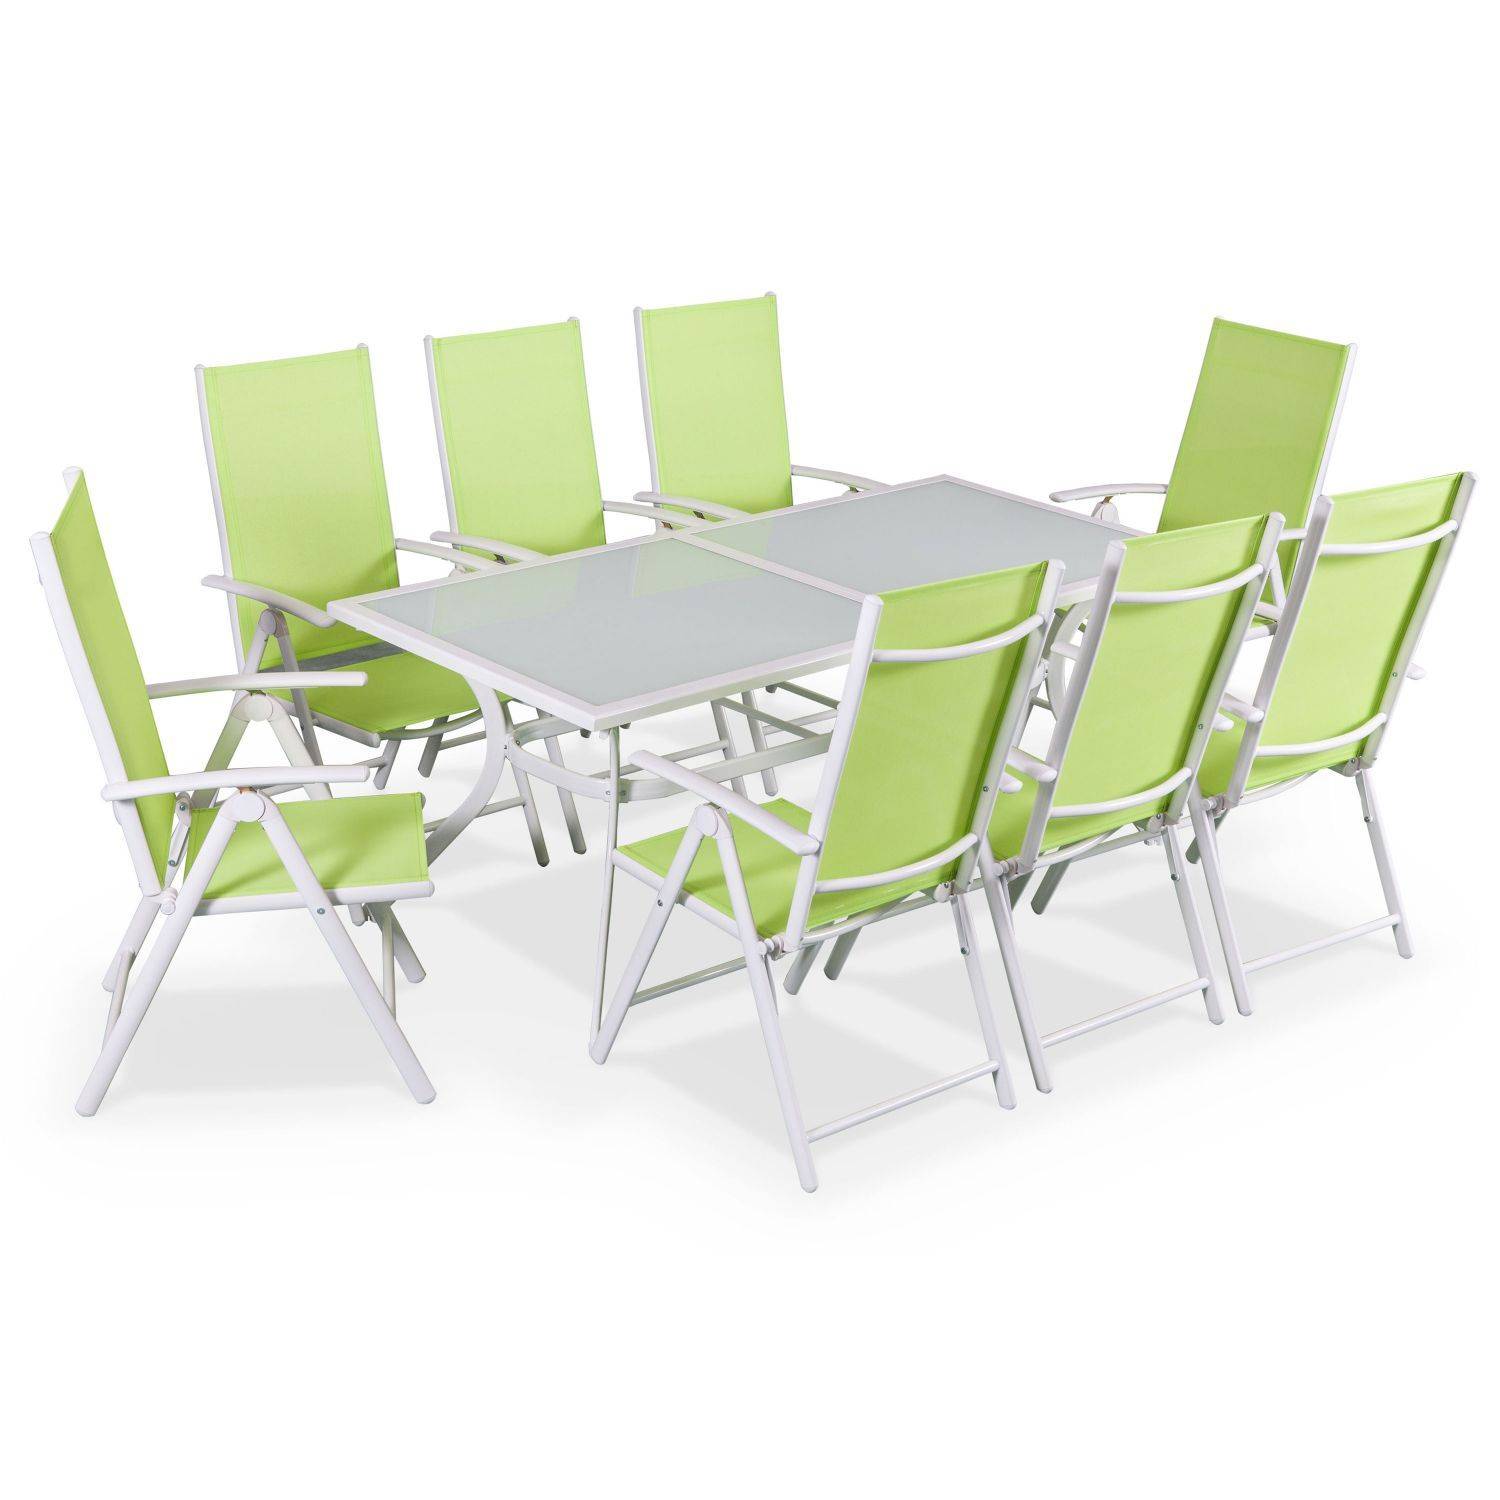 Gartengarnitur aus Aluminium und Textilene - Naevia - Weiß, Apfelgrün - 8 Sitze - 1 großer rechteckiger Tisch, 8 Klappstühle Photo1